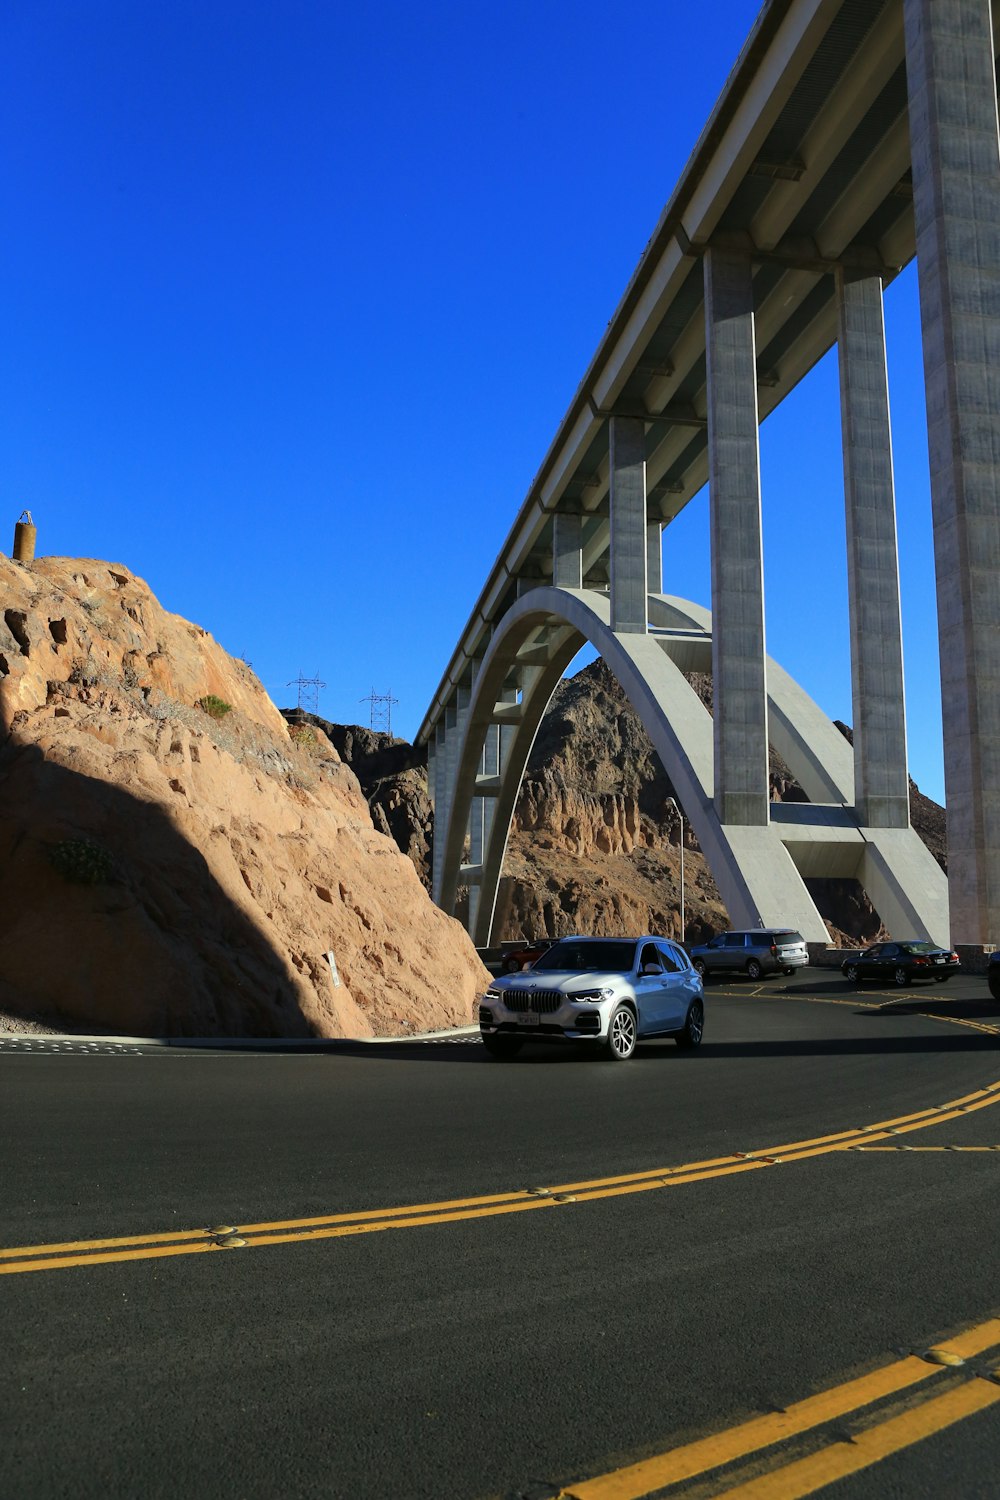 a white car driving down a road under a bridge